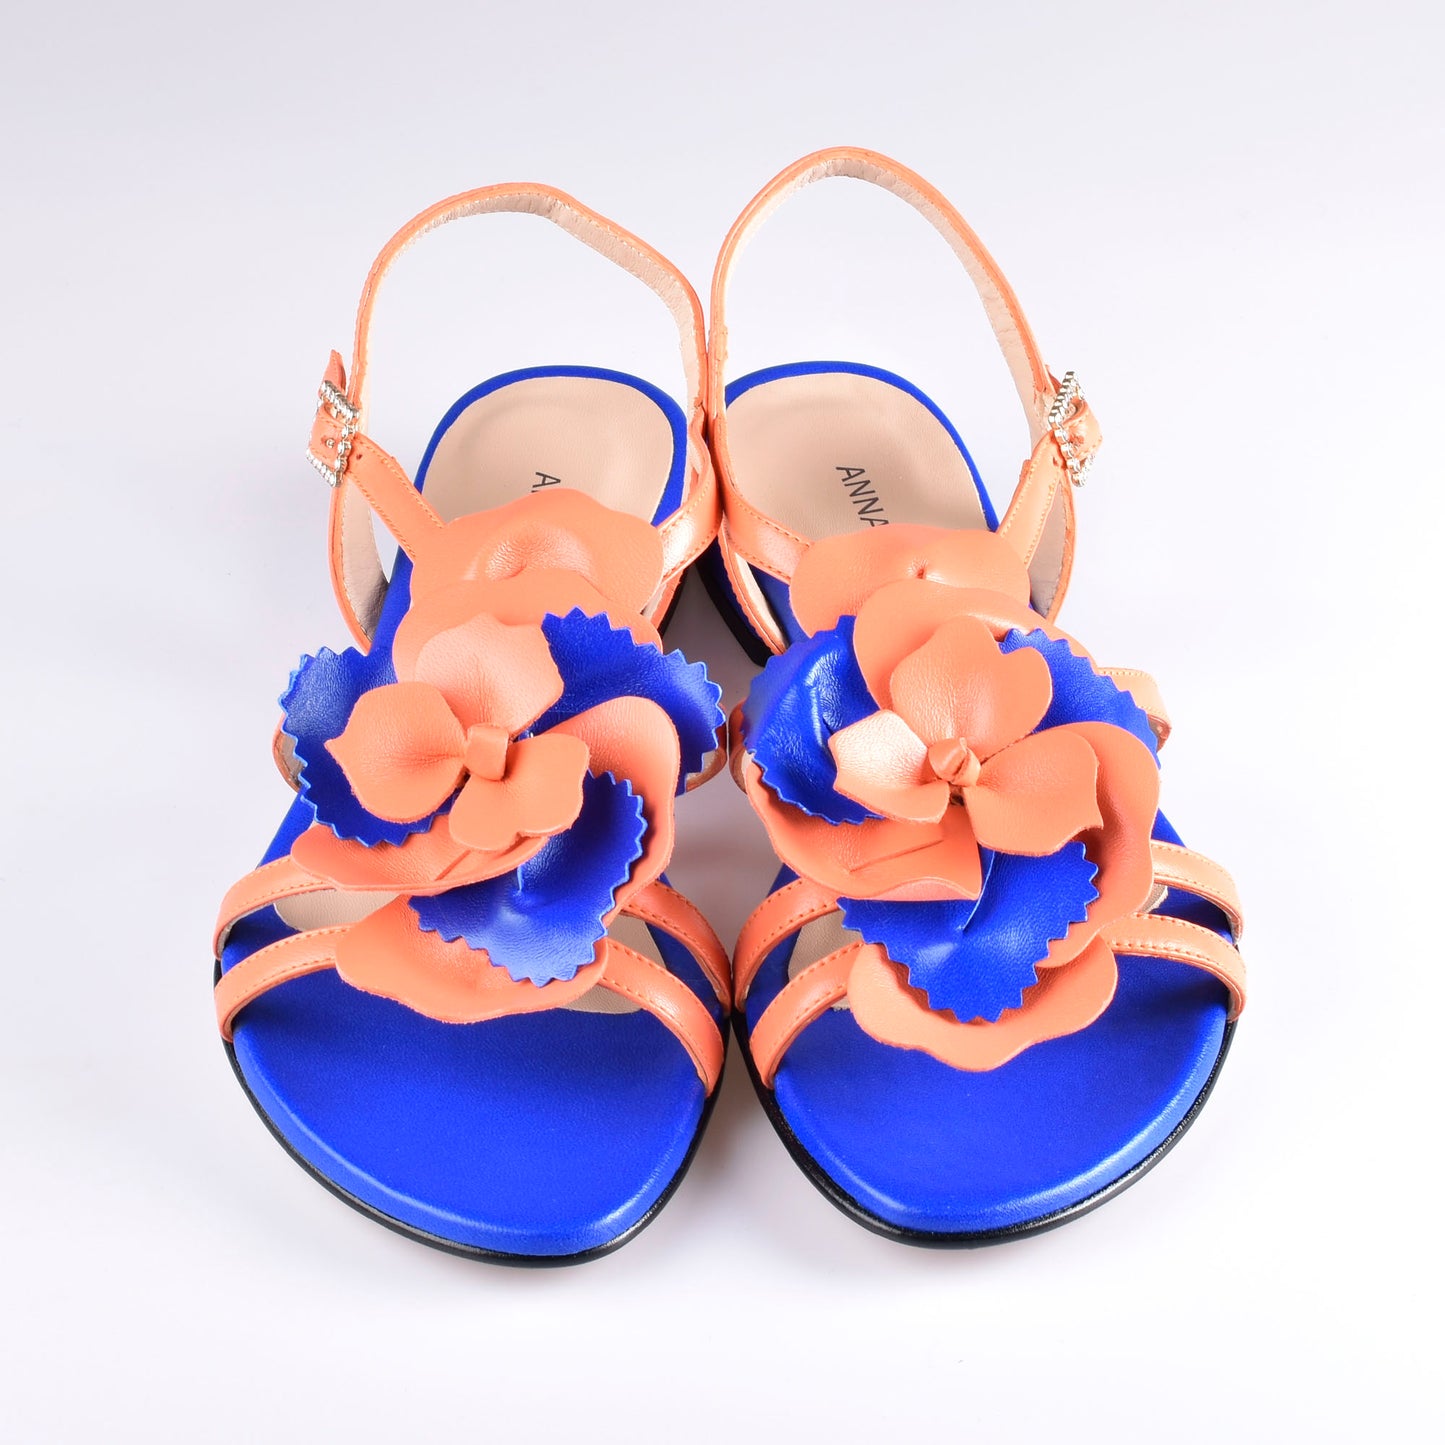 sandalias mujer azul y naranja 